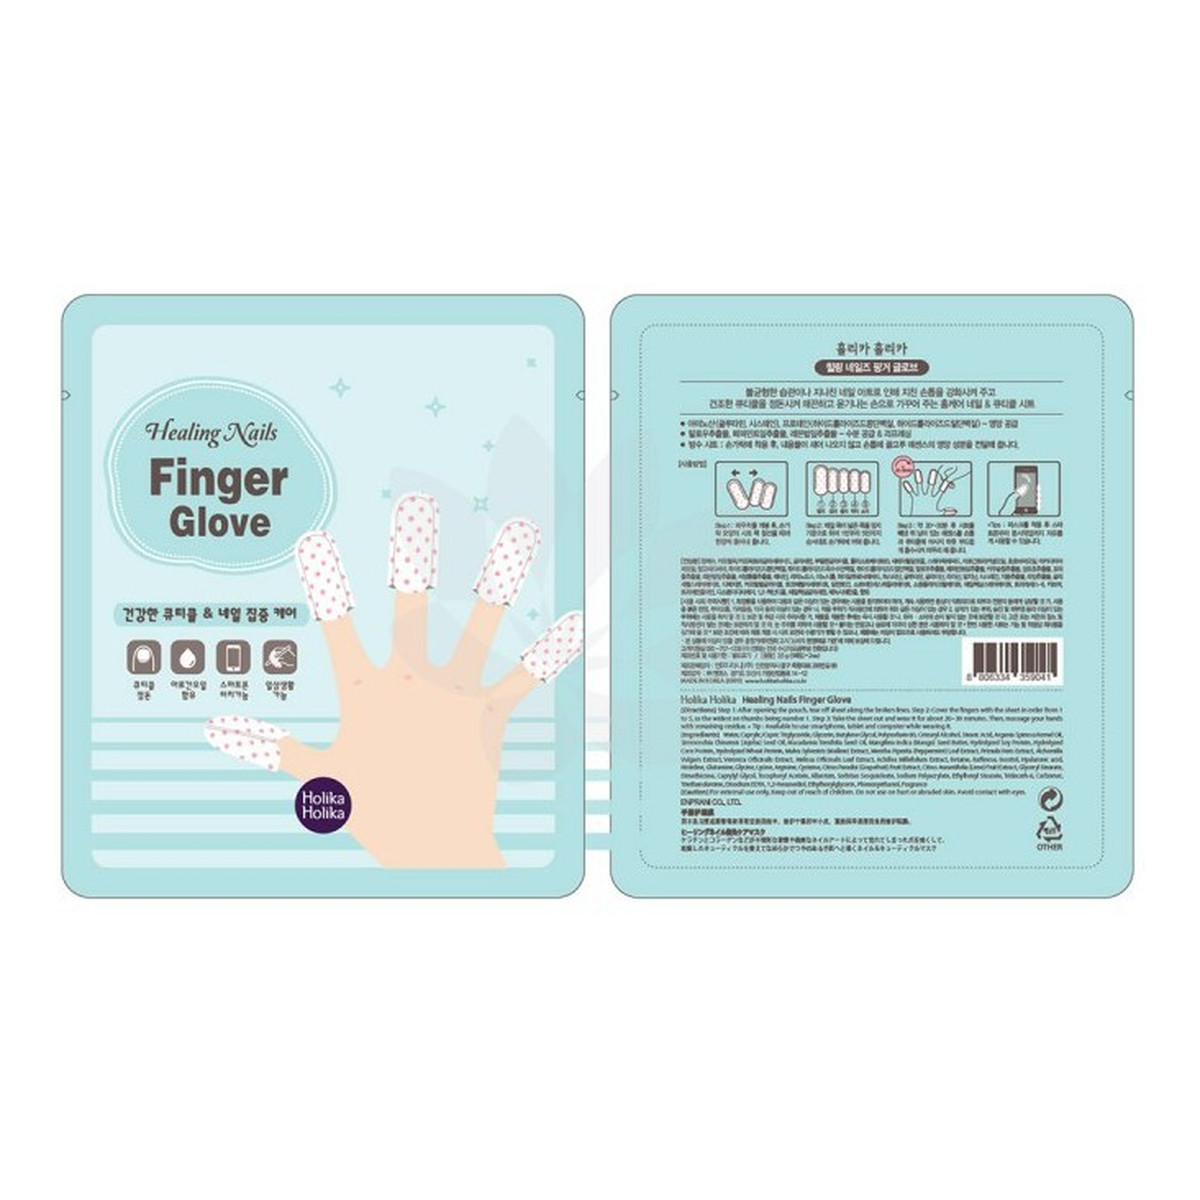 Holika Holika Nails Finger Glove - Pielęgnacyjne rękawiczki do paznokci 3g